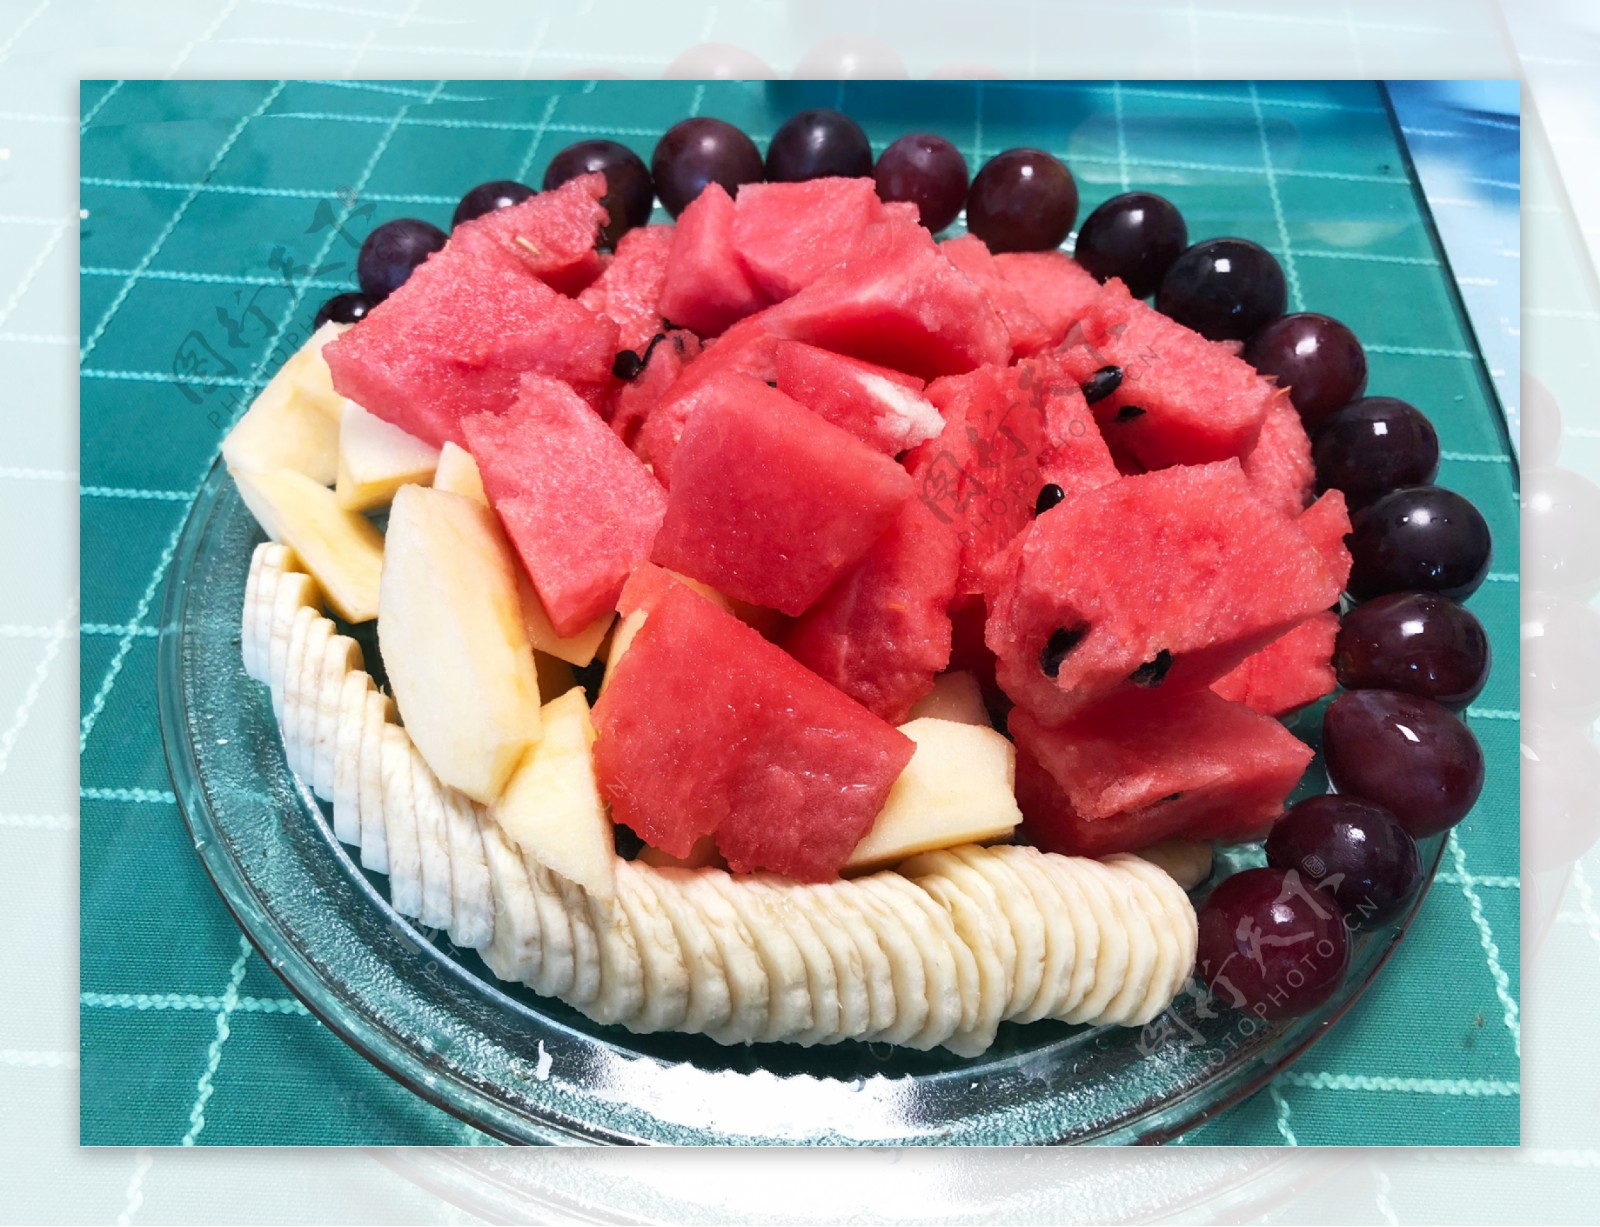 水果拼盘怎么做_水果拼盘的做法_圆圆开心厨房_豆果美食